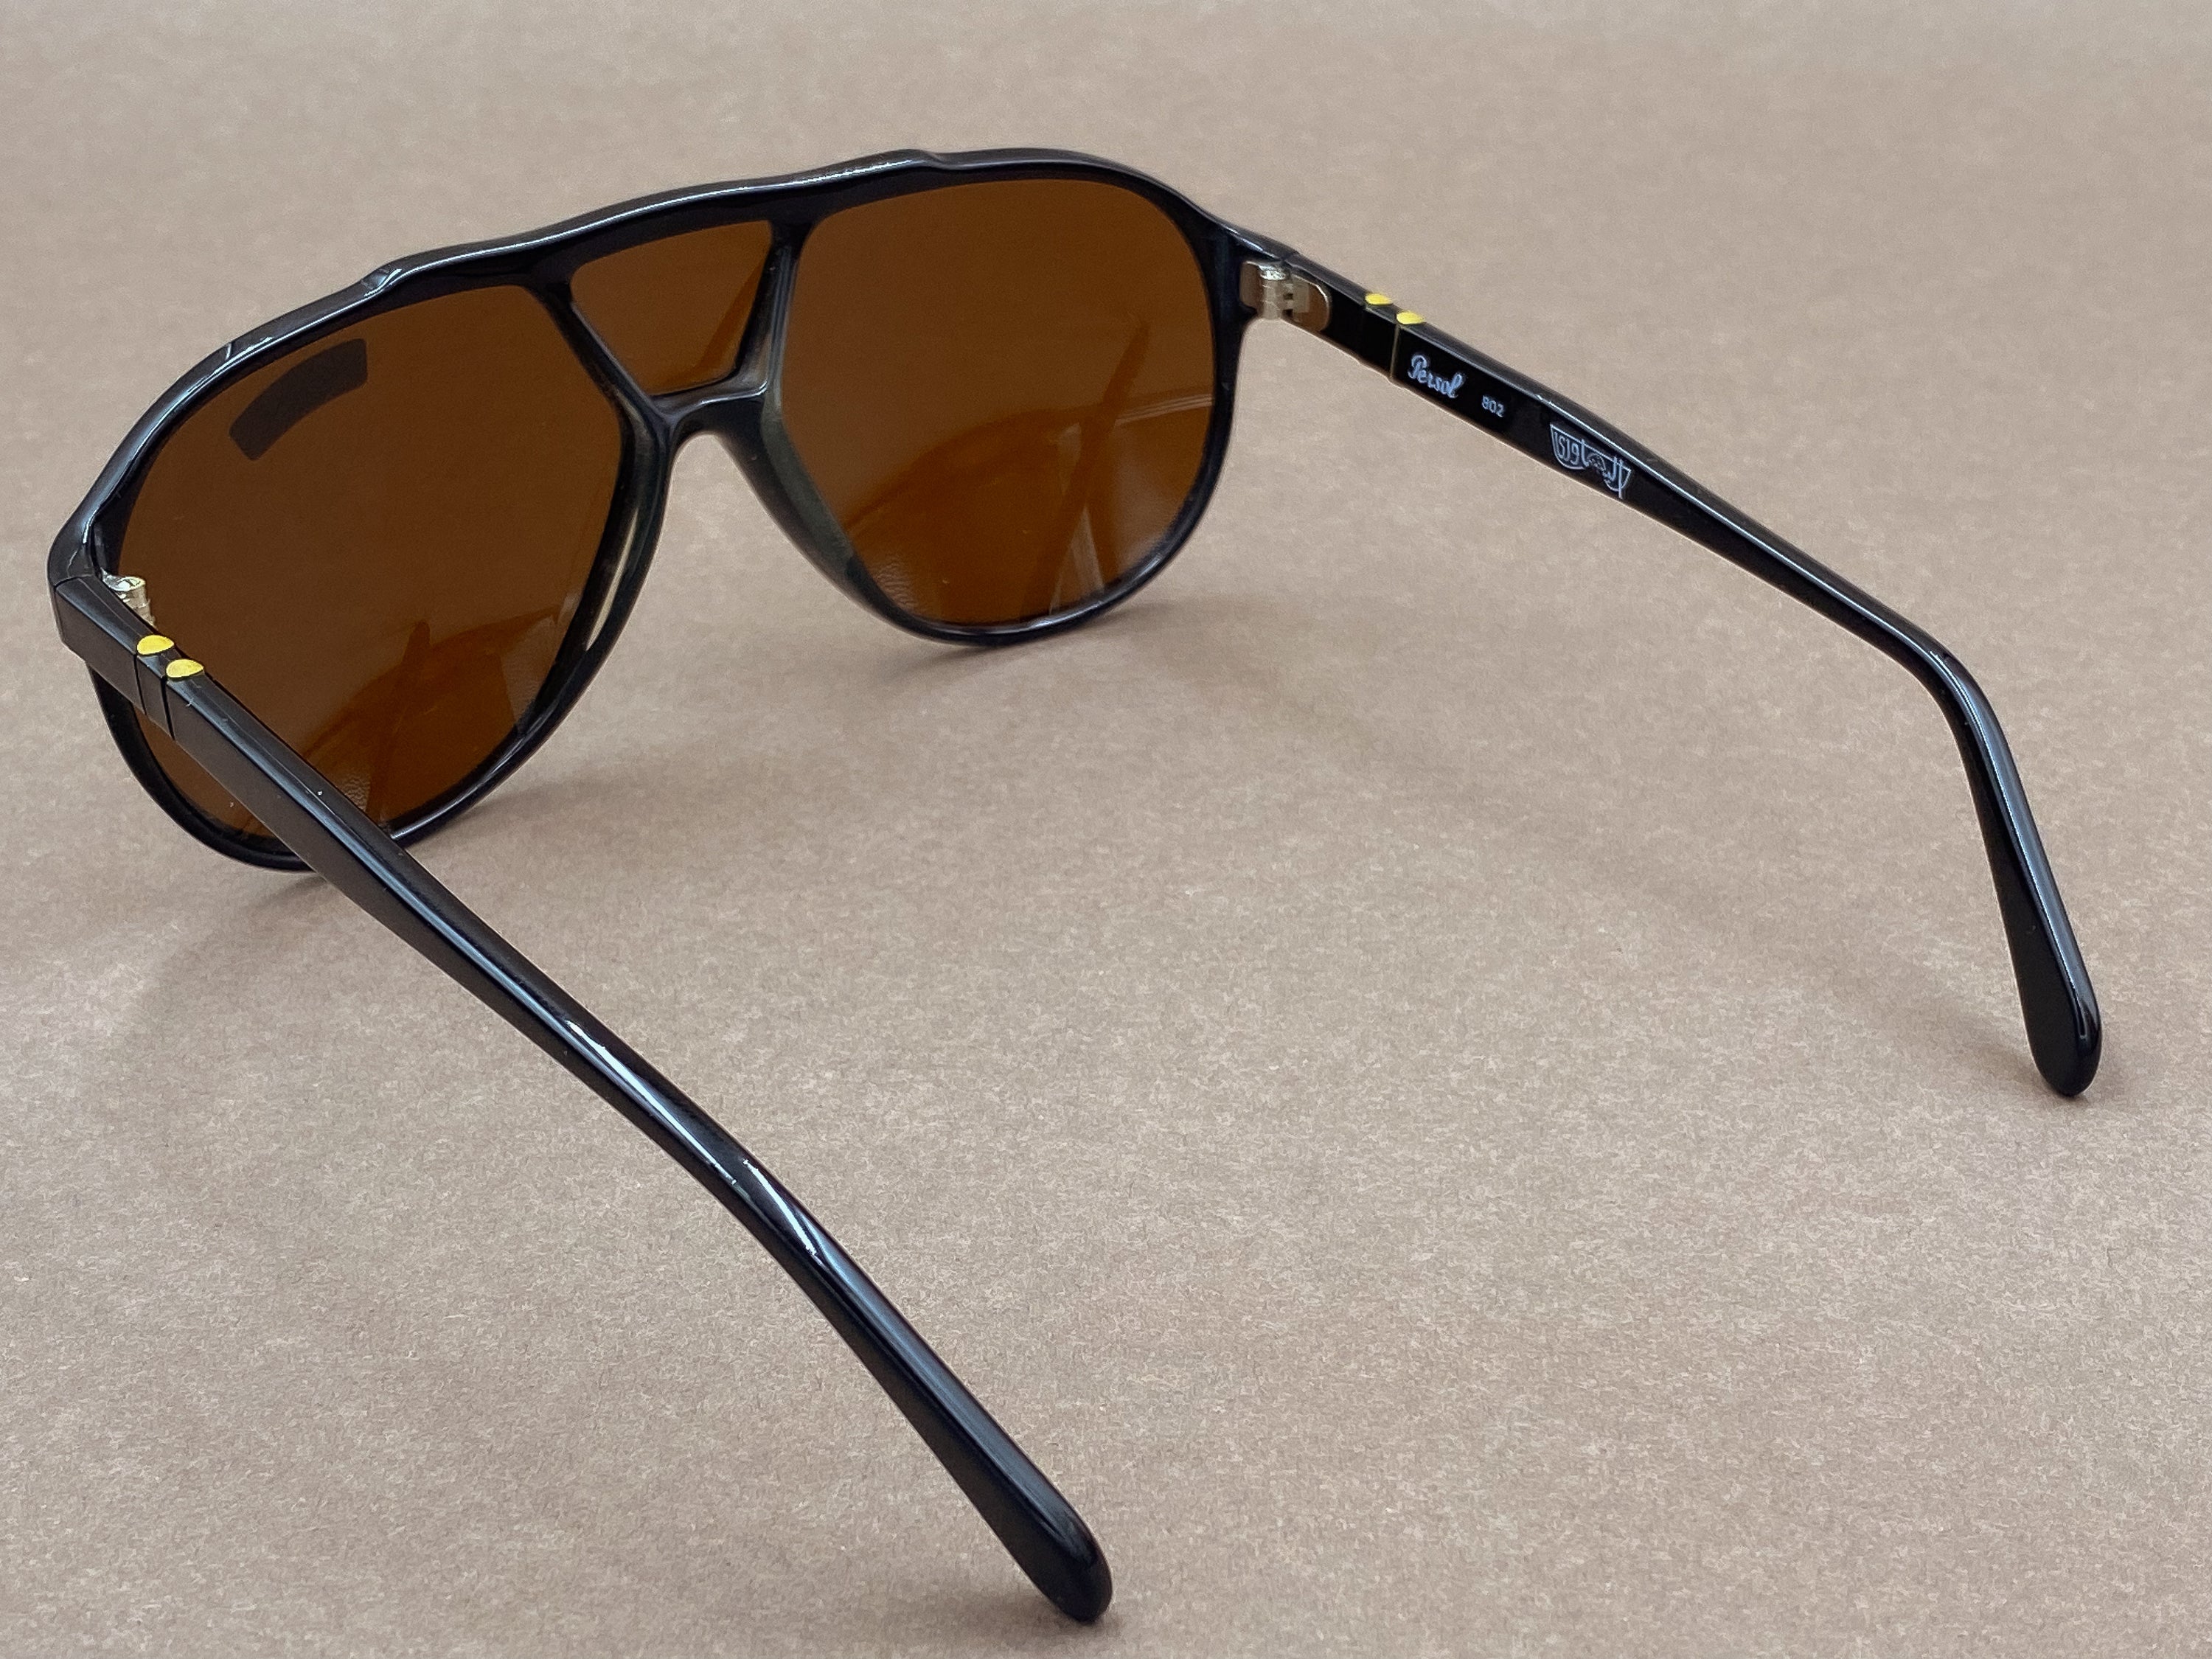 Persol Ratti 802 sunglasses